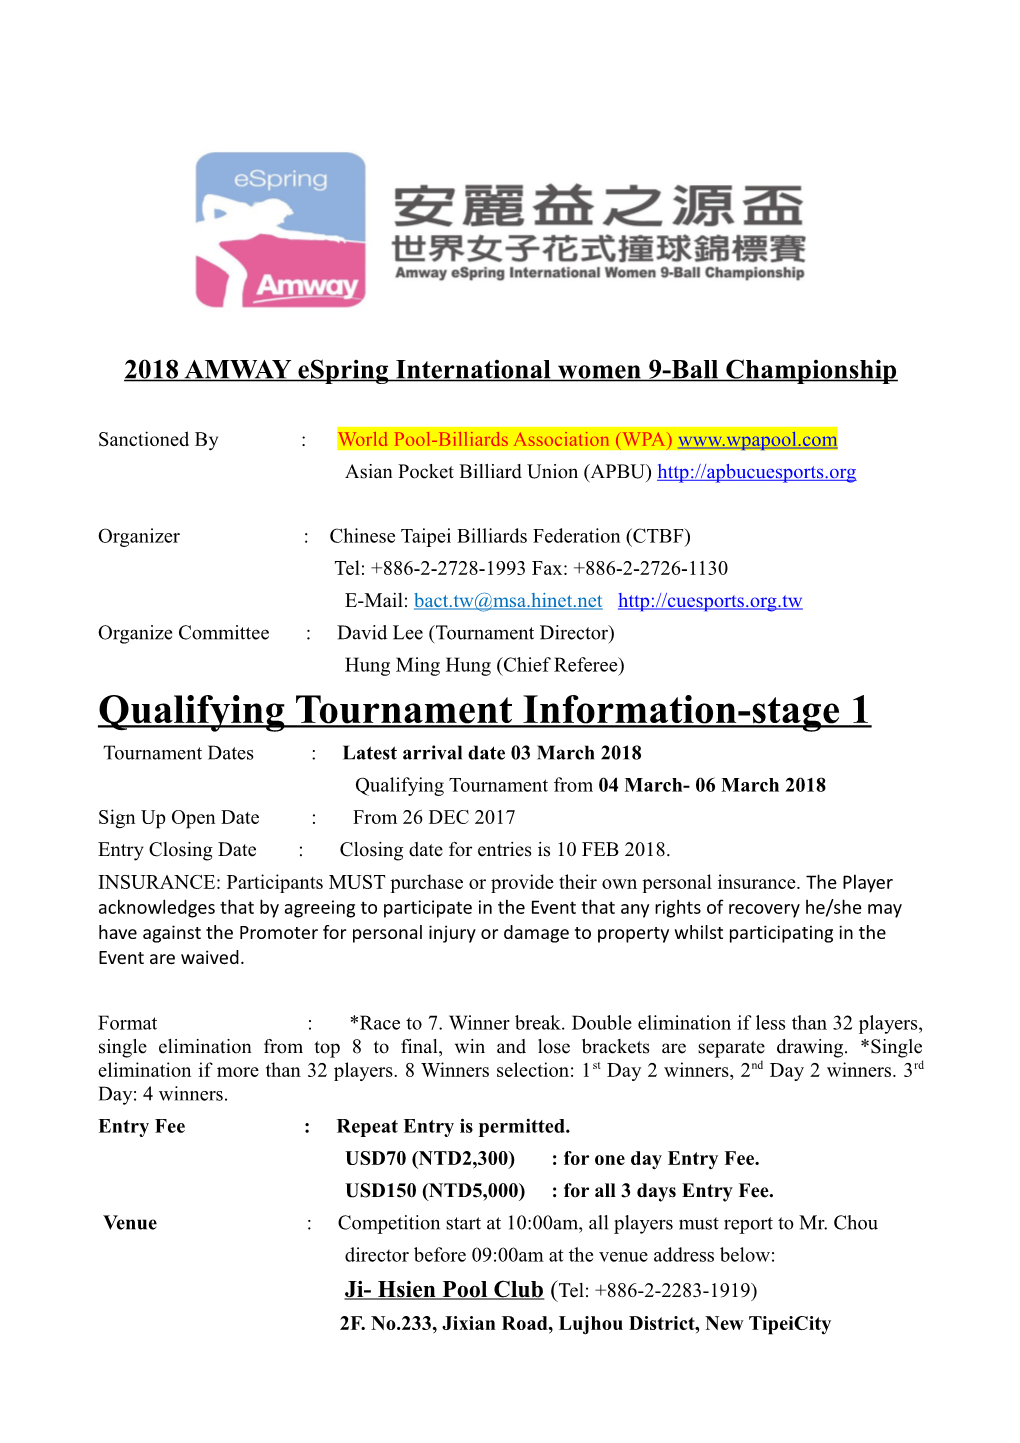 2018 AMWAY Espringinternational Women 9-Ball Championship